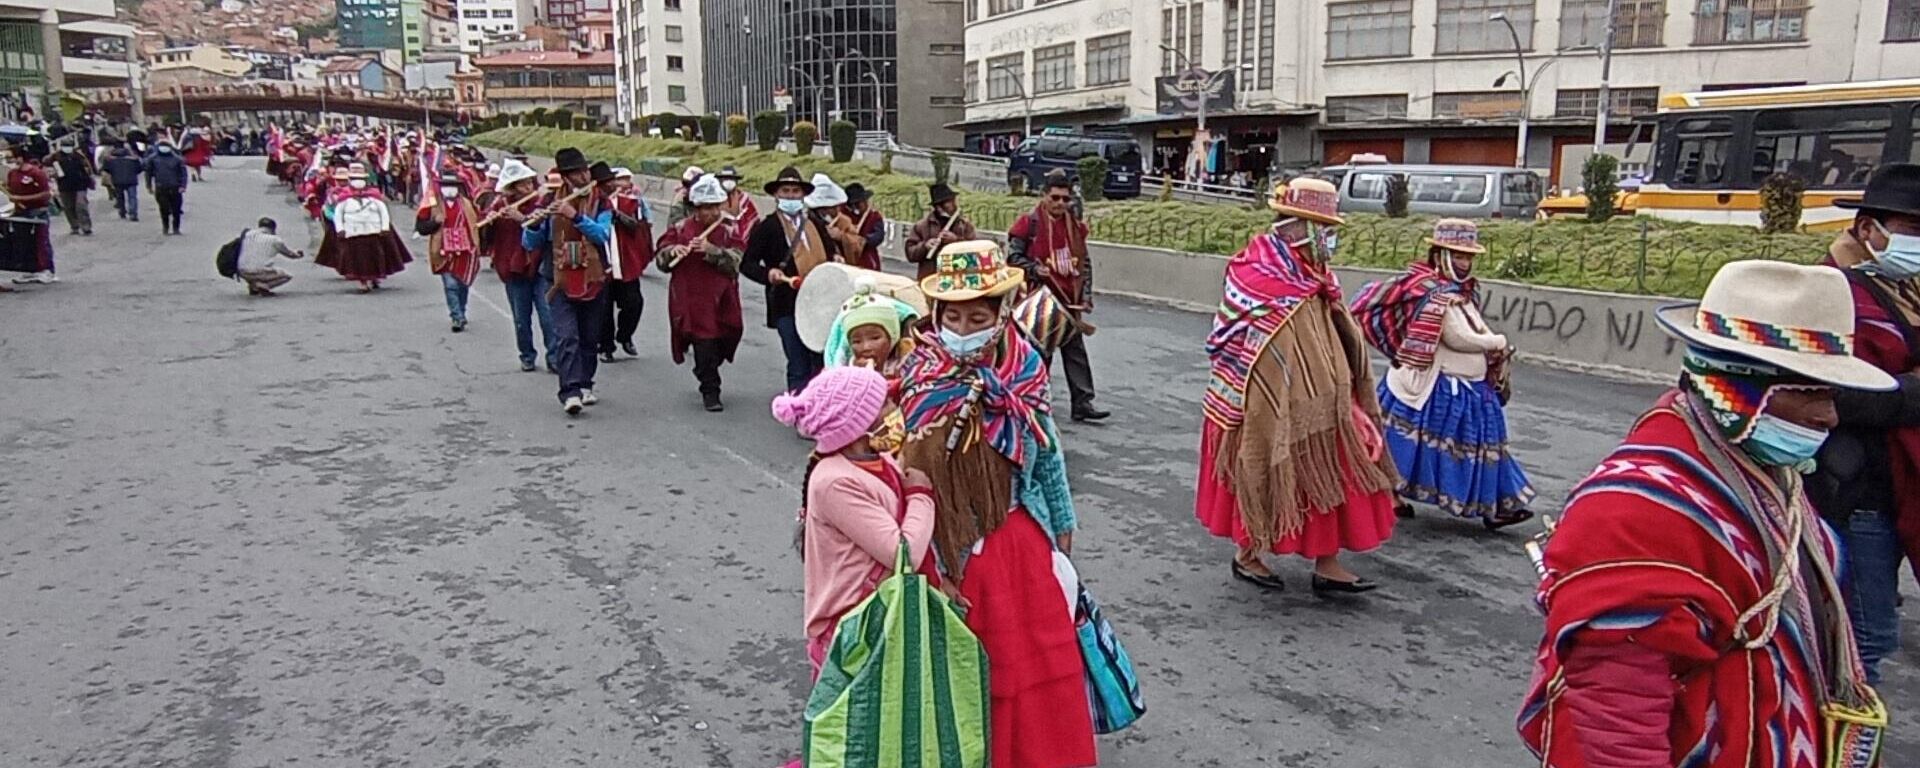 Indígenas y campesinos marchan en La Paz, Bolivia - Sputnik Mundo, 1920, 11.10.2022